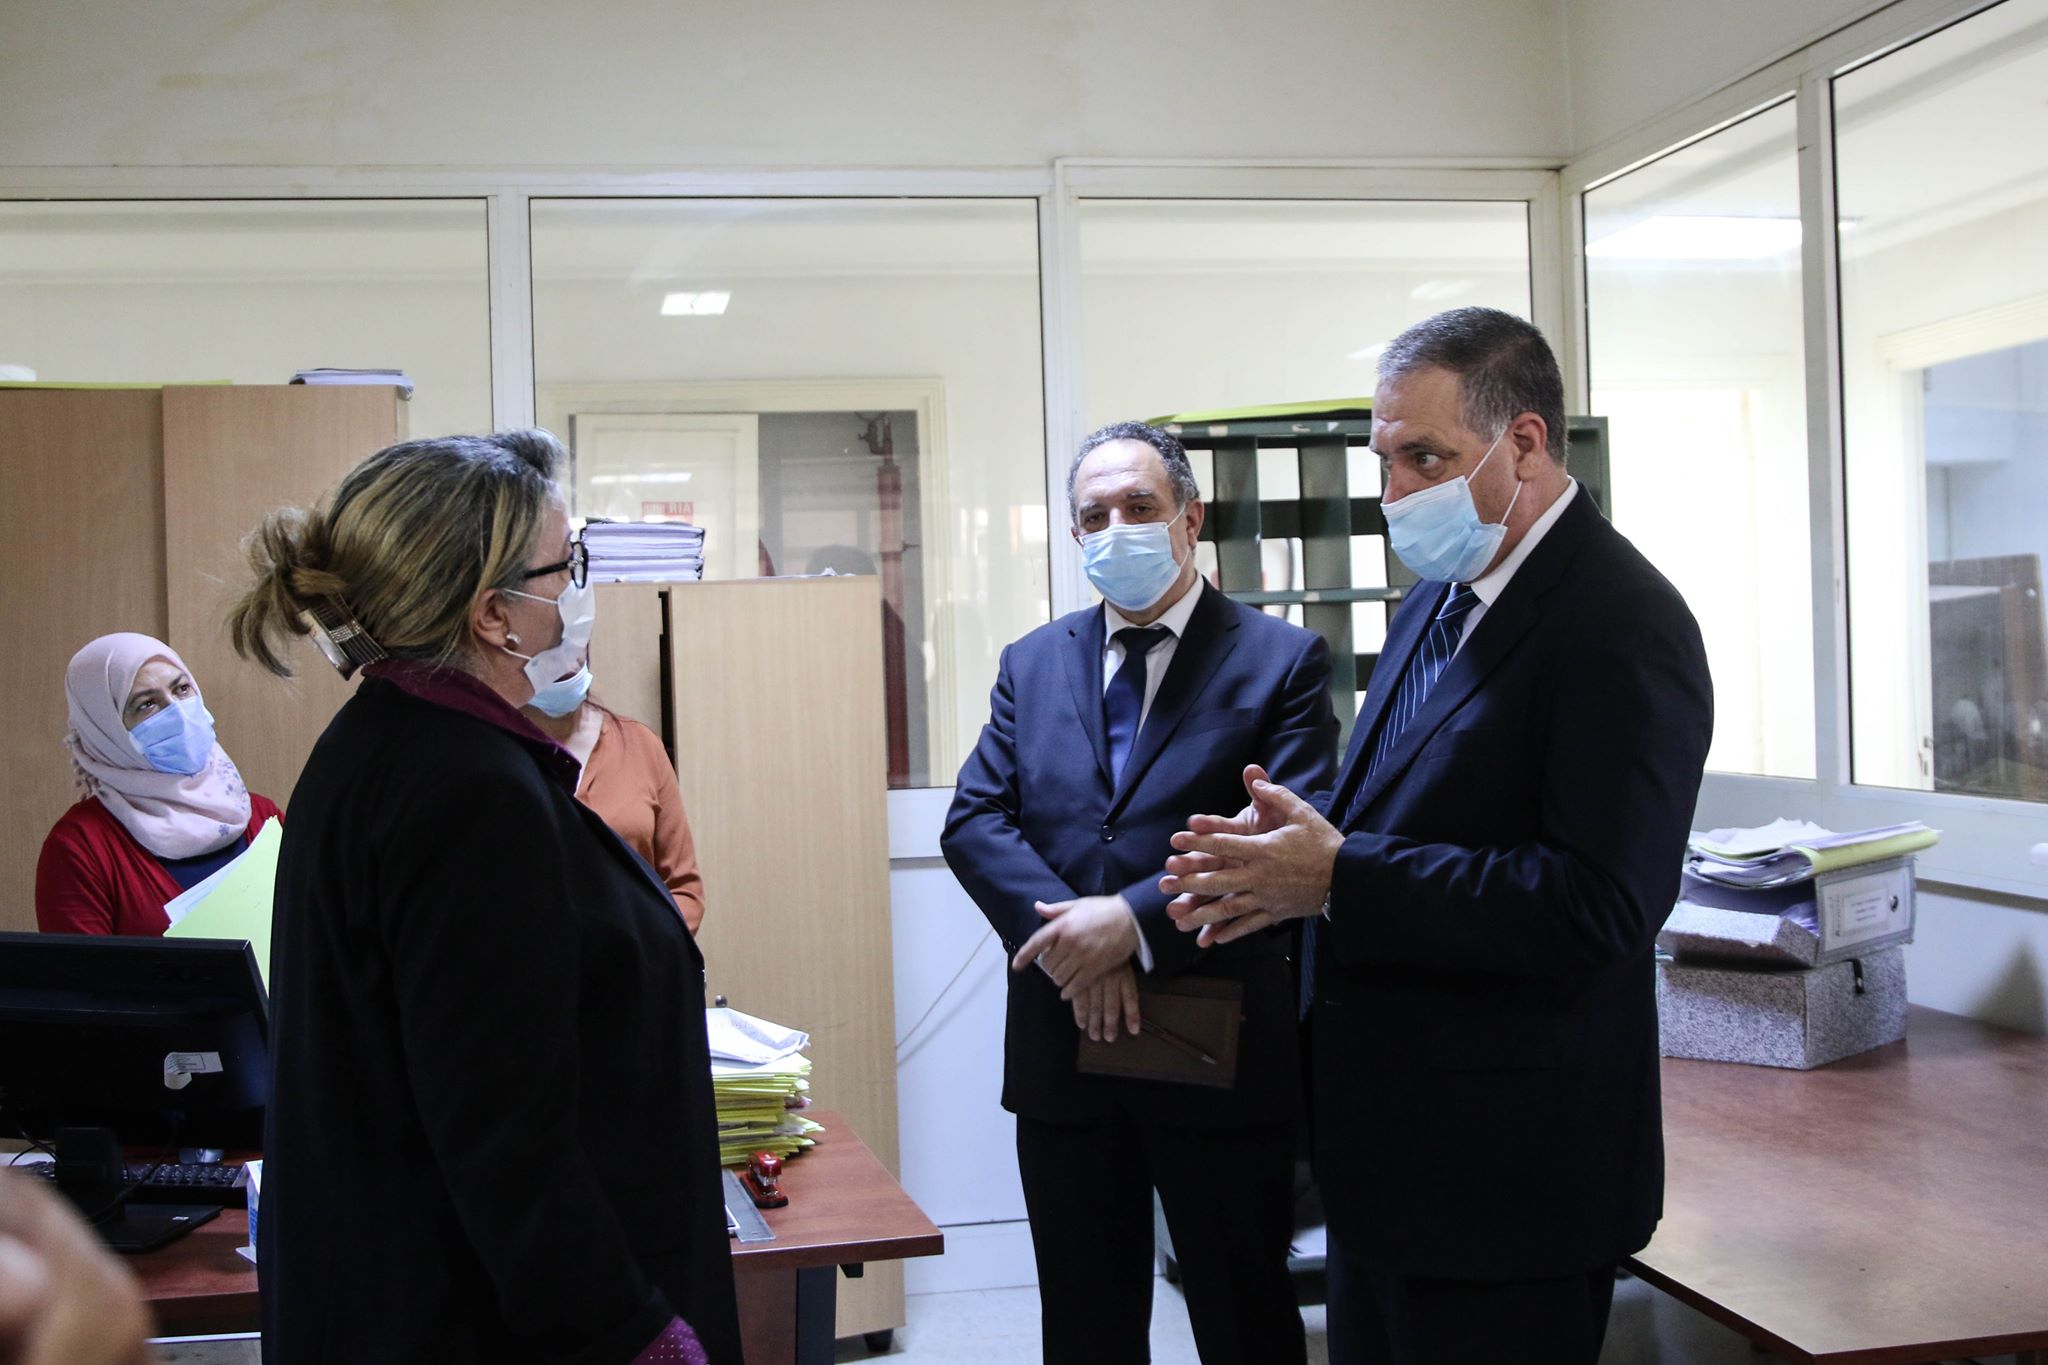 Lors d’une visite à la direction régionale de la propriété foncière de Ben Arous : Chaouachi recommande la réduction des délais  pour les opérations foncières.